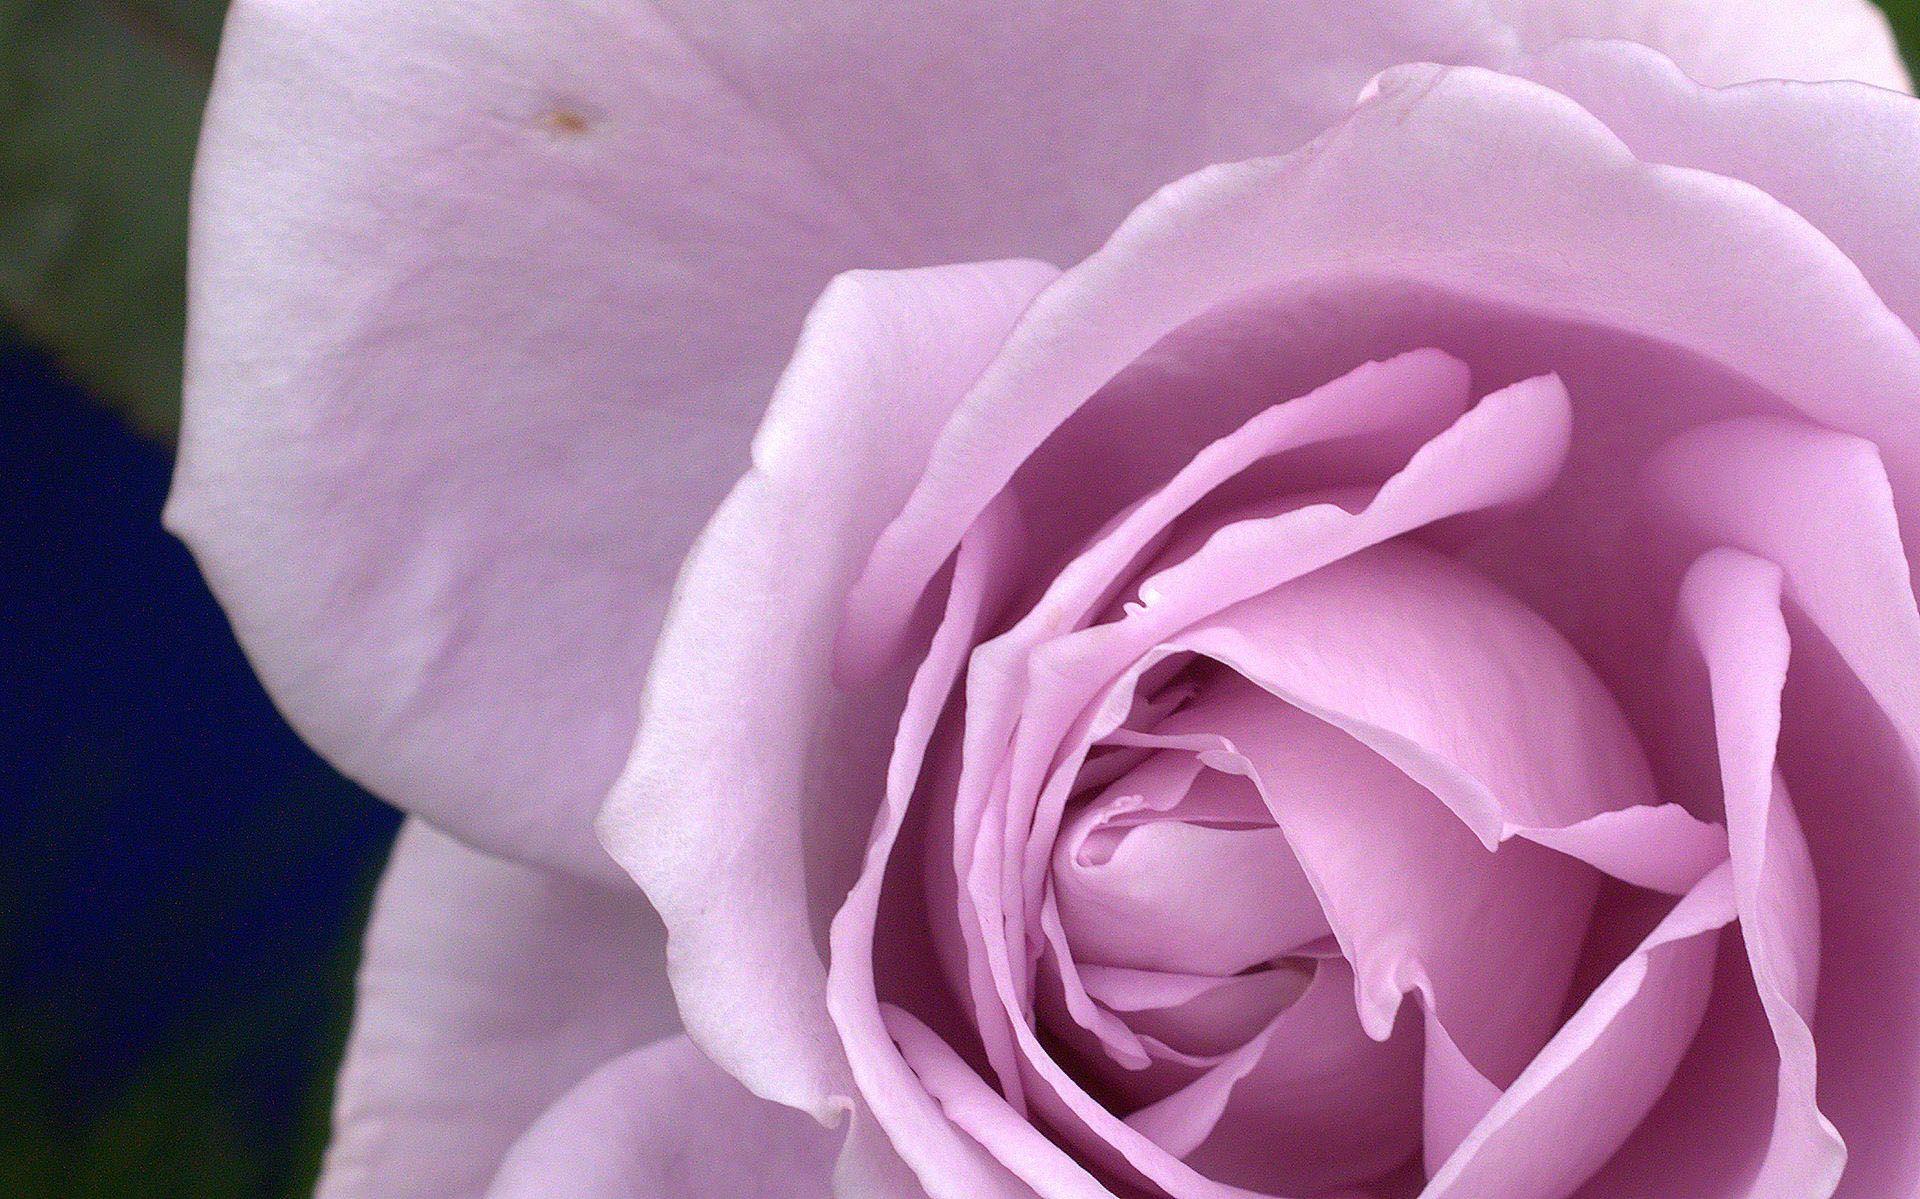 Roses flower, Roses photo, roses wallpaper for your desktop